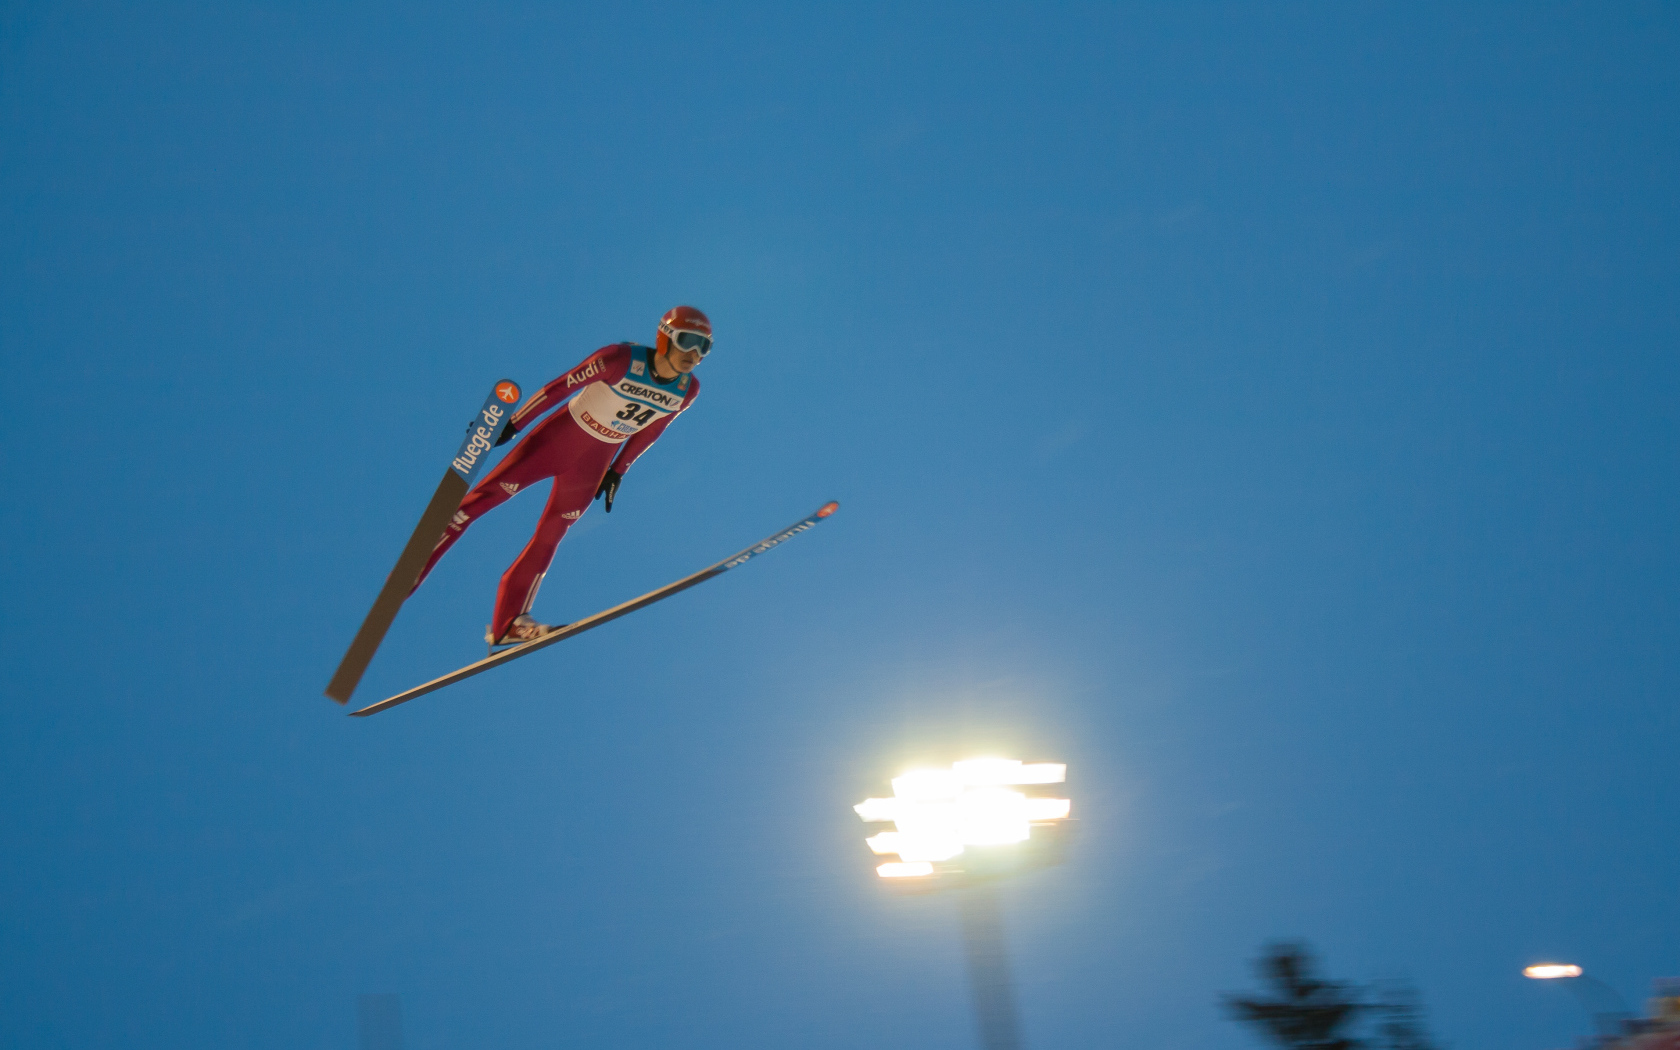 Andreas Vellinger German jumper in Sochi